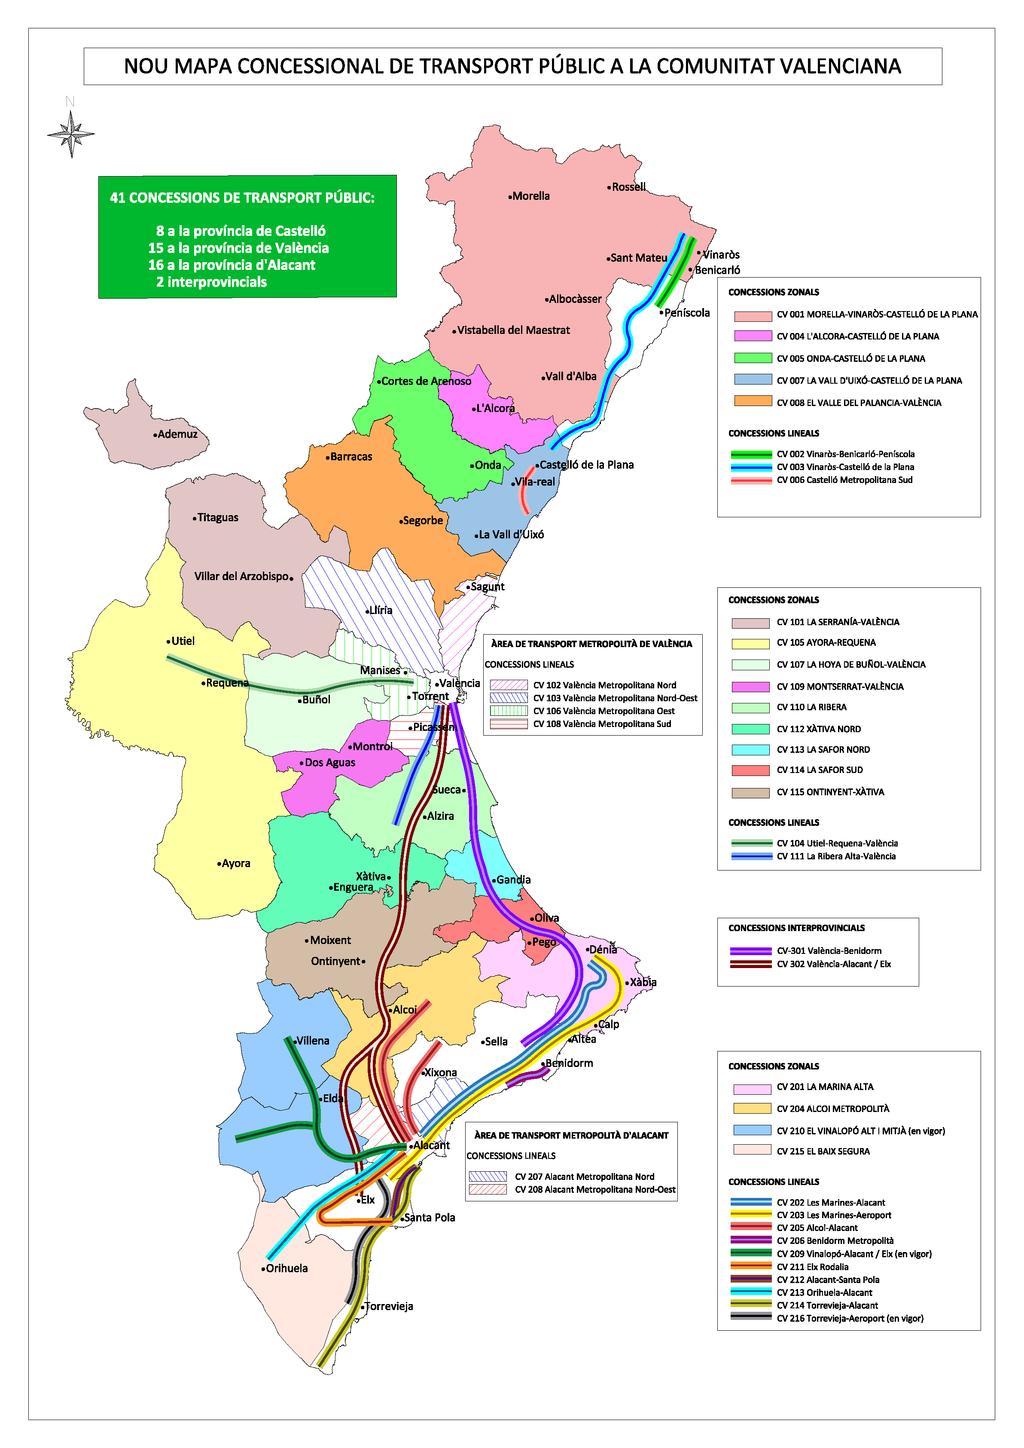 15 CONCESIÓN LINEAL: Concesión de transporte público de uso general cuyas rutas se estructuran en base a un eje principal de movilidad.